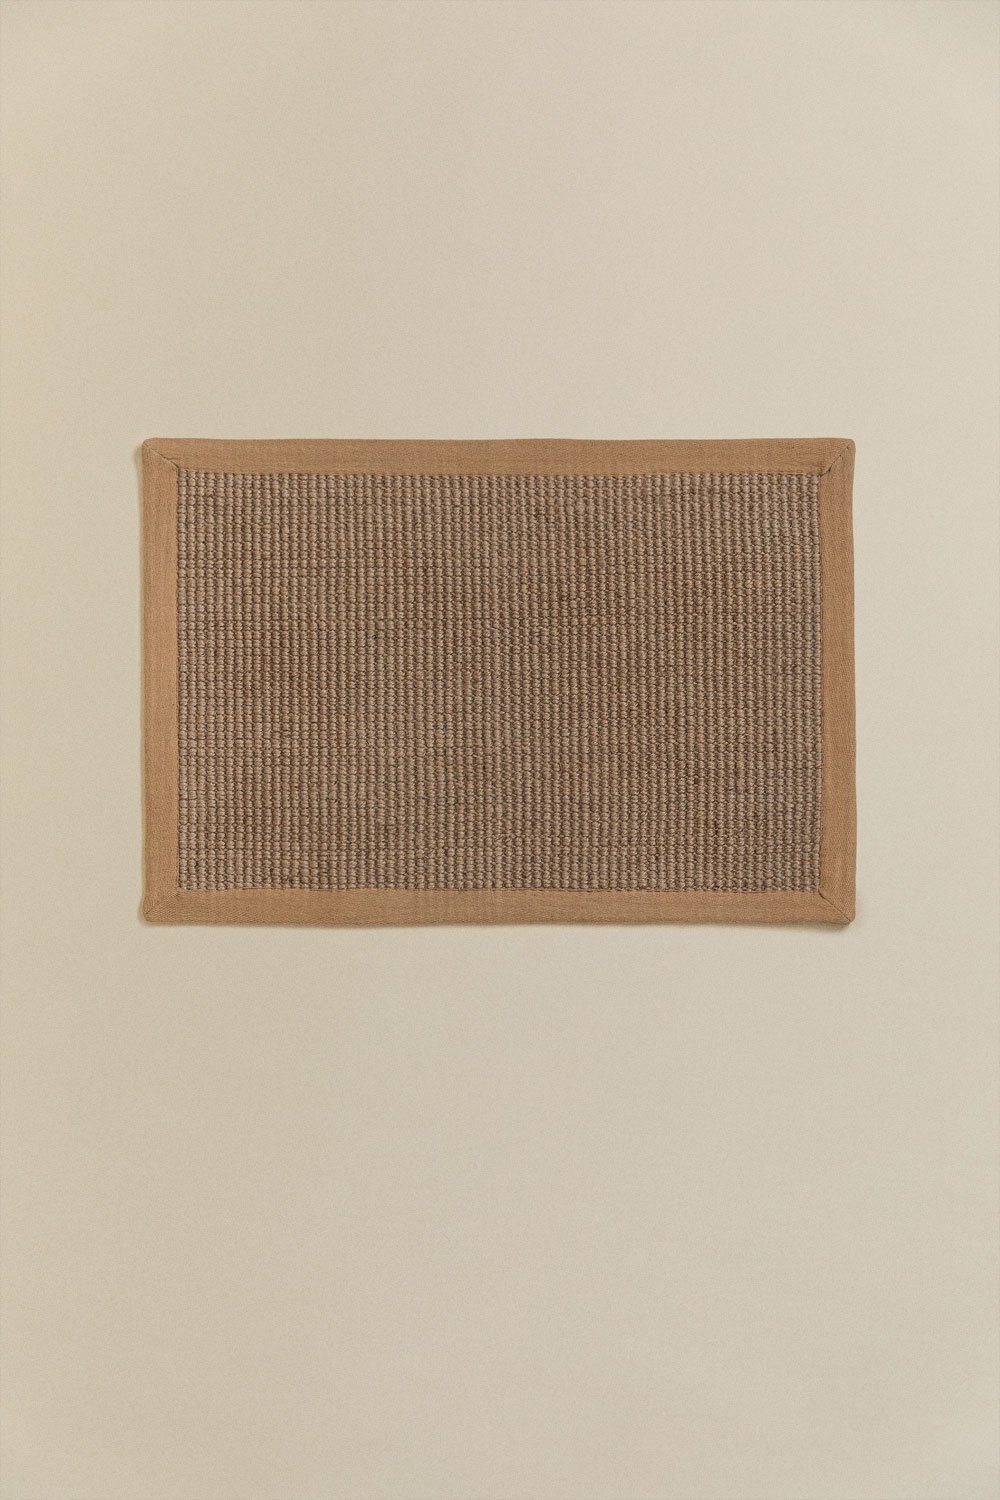 Fußmatte aus Jute (60x40 cm) Gimendy, Galeriebild 1